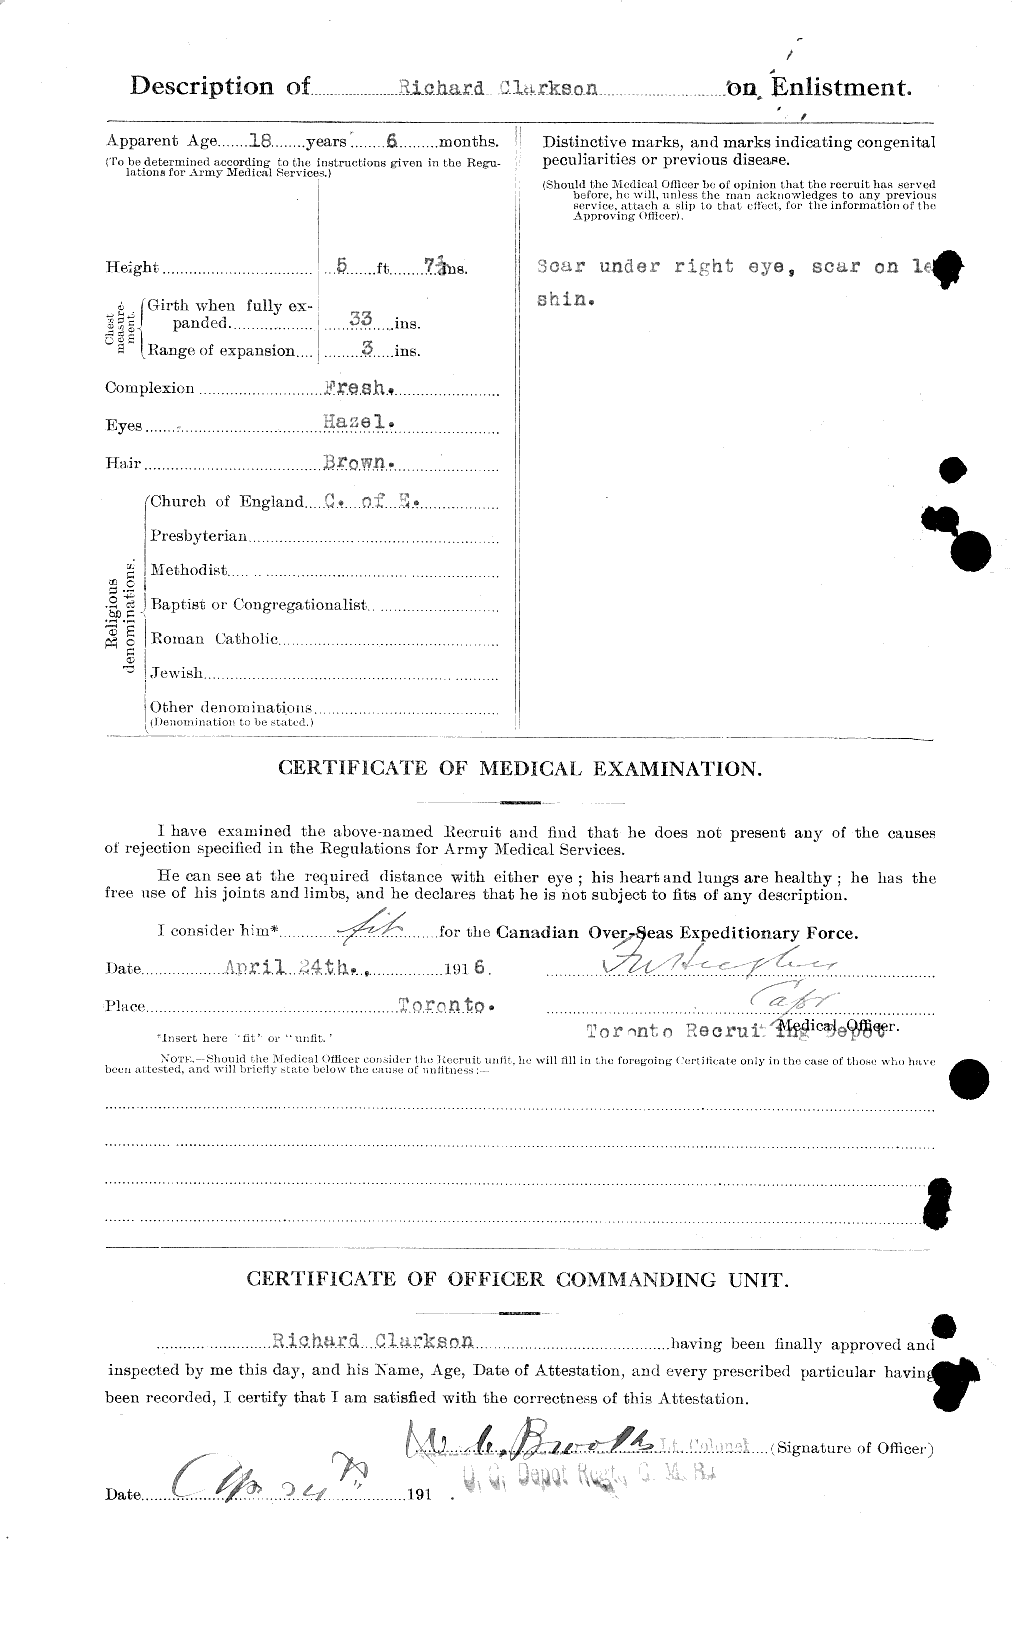 Dossiers du Personnel de la Première Guerre mondiale - CEC 021469b